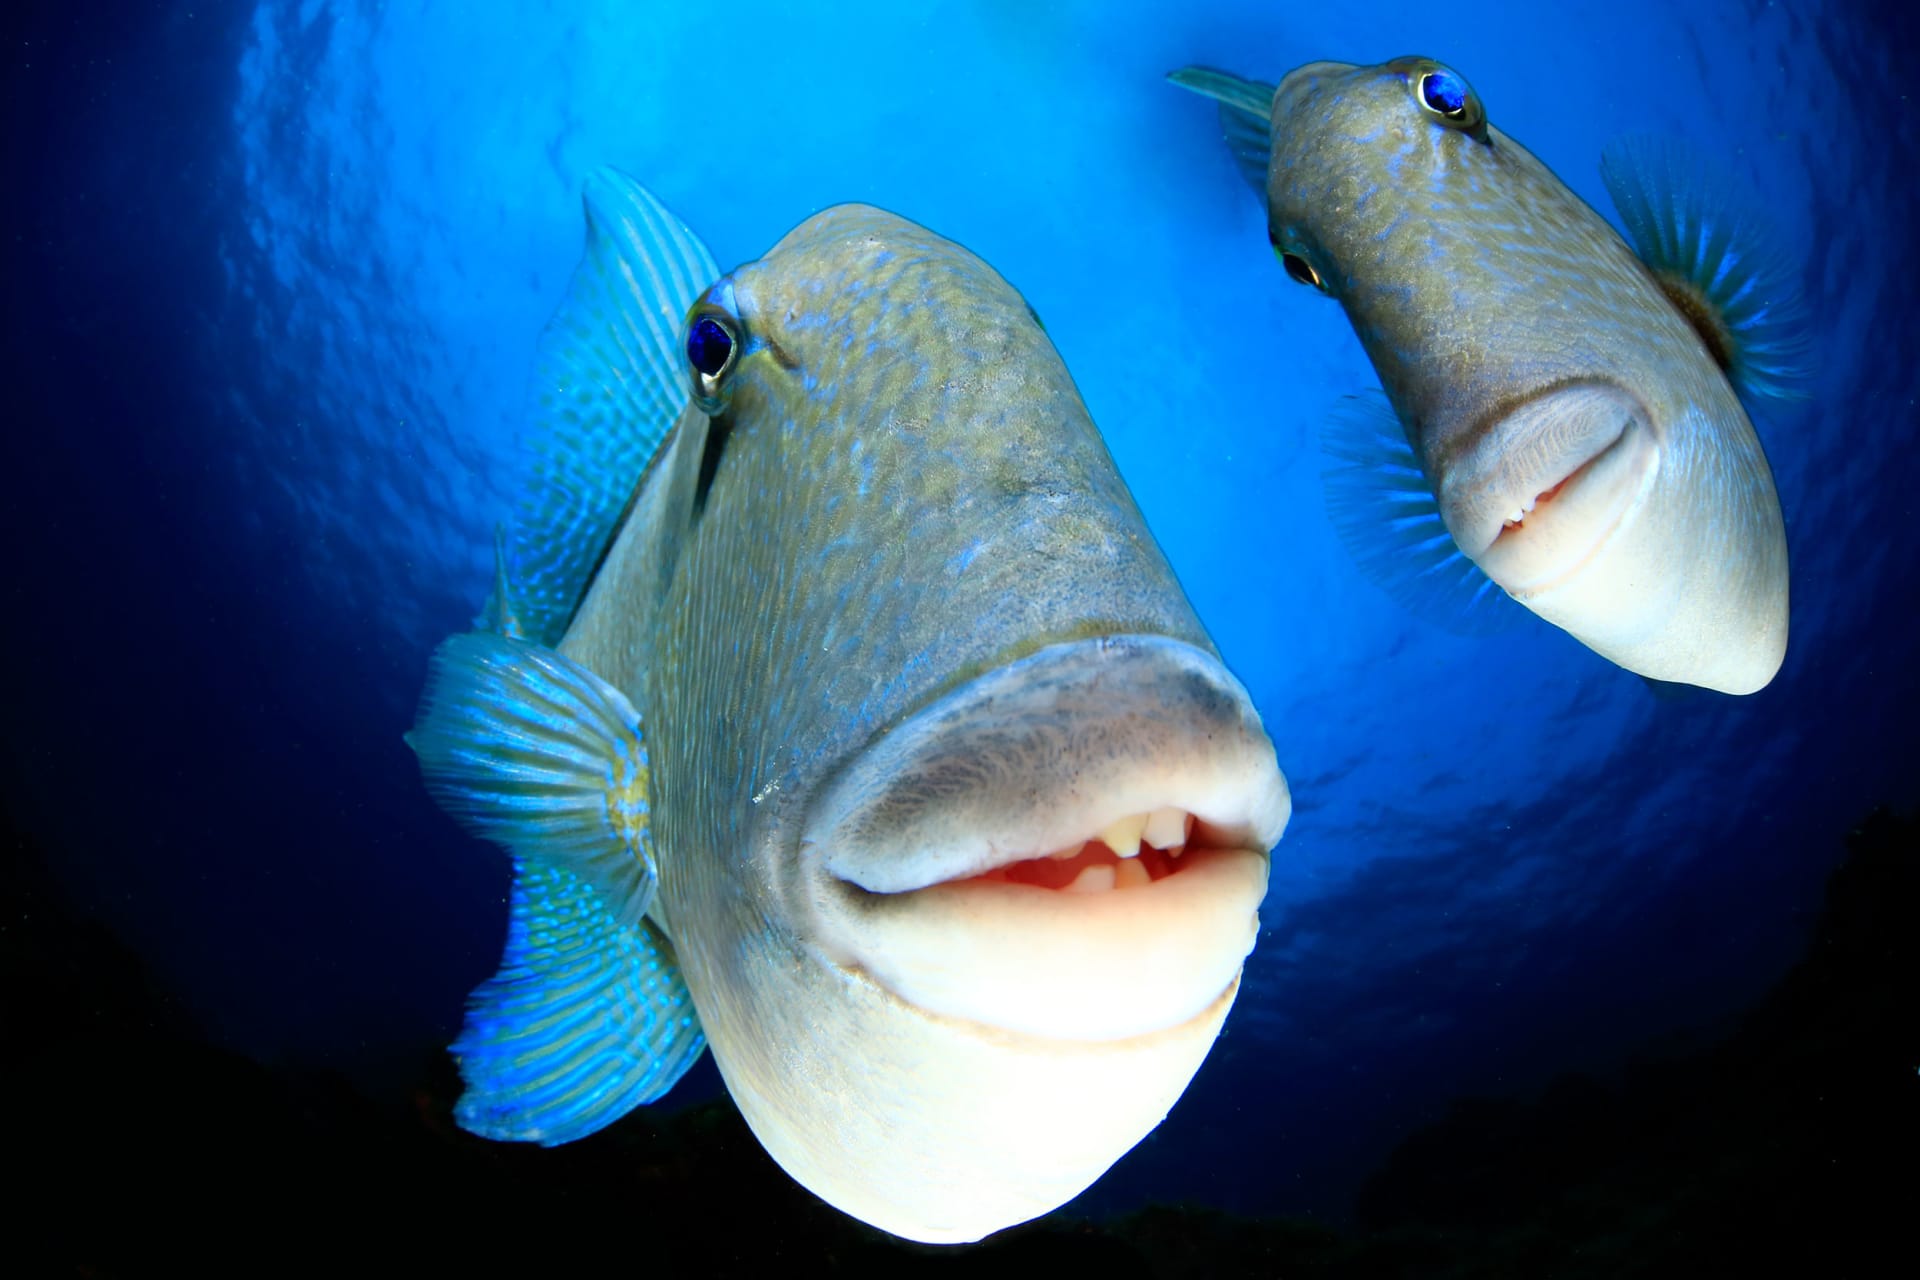 شبا أخرق وسمكة مبتسمة.. إليك الصور الفائزة بجائزة كوميديا الحياة البرية للتصوير